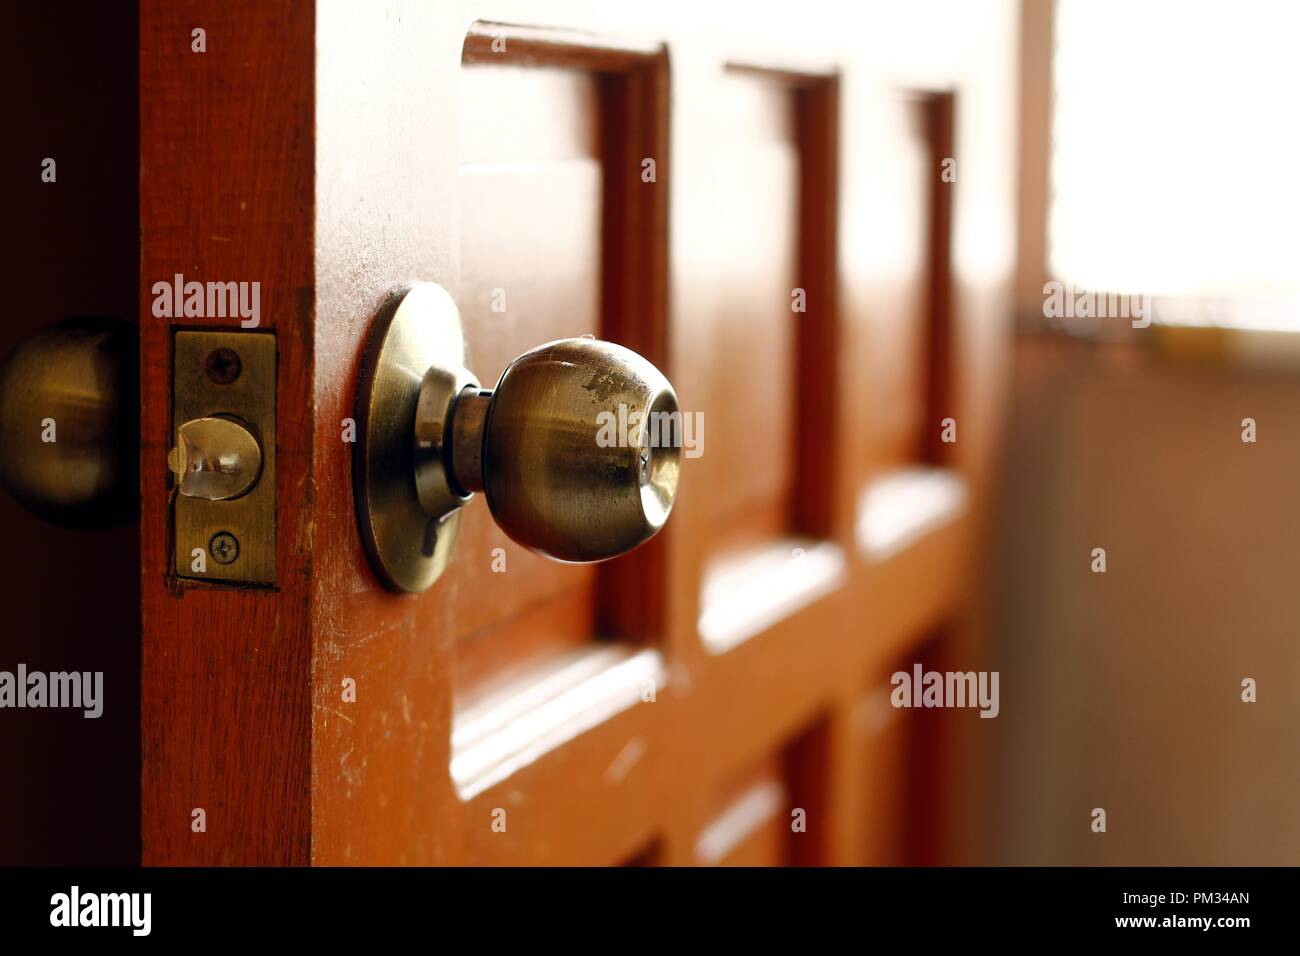 Photo of a door knob of a wooden door Stock Photo